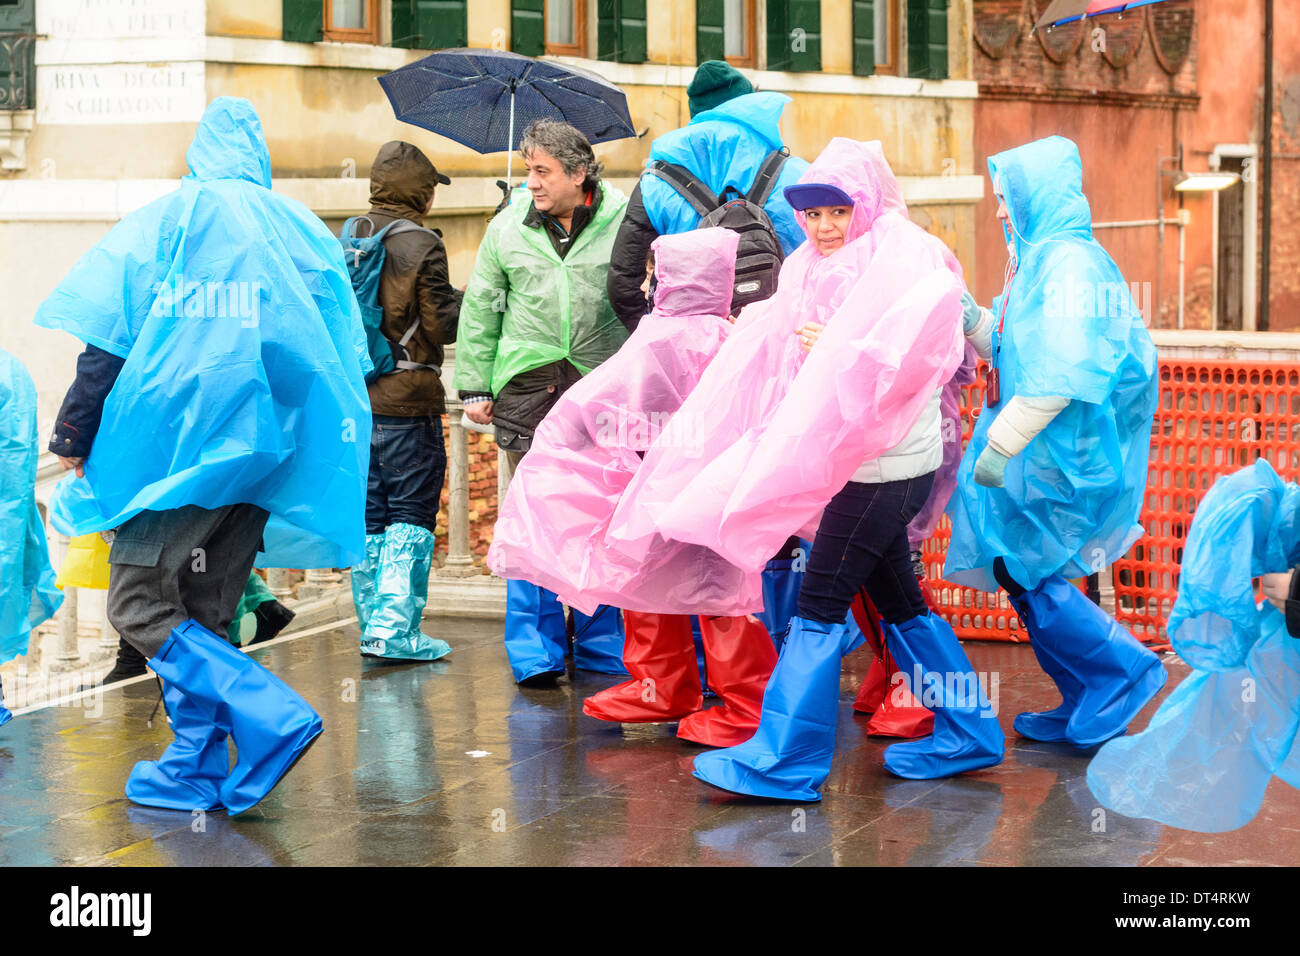 Venise, Italie. Les gens par temps humide, la pluie vêtements, ponchos et des bottes de pluie, debout sur le pont pendant la pluie. Banque D'Images